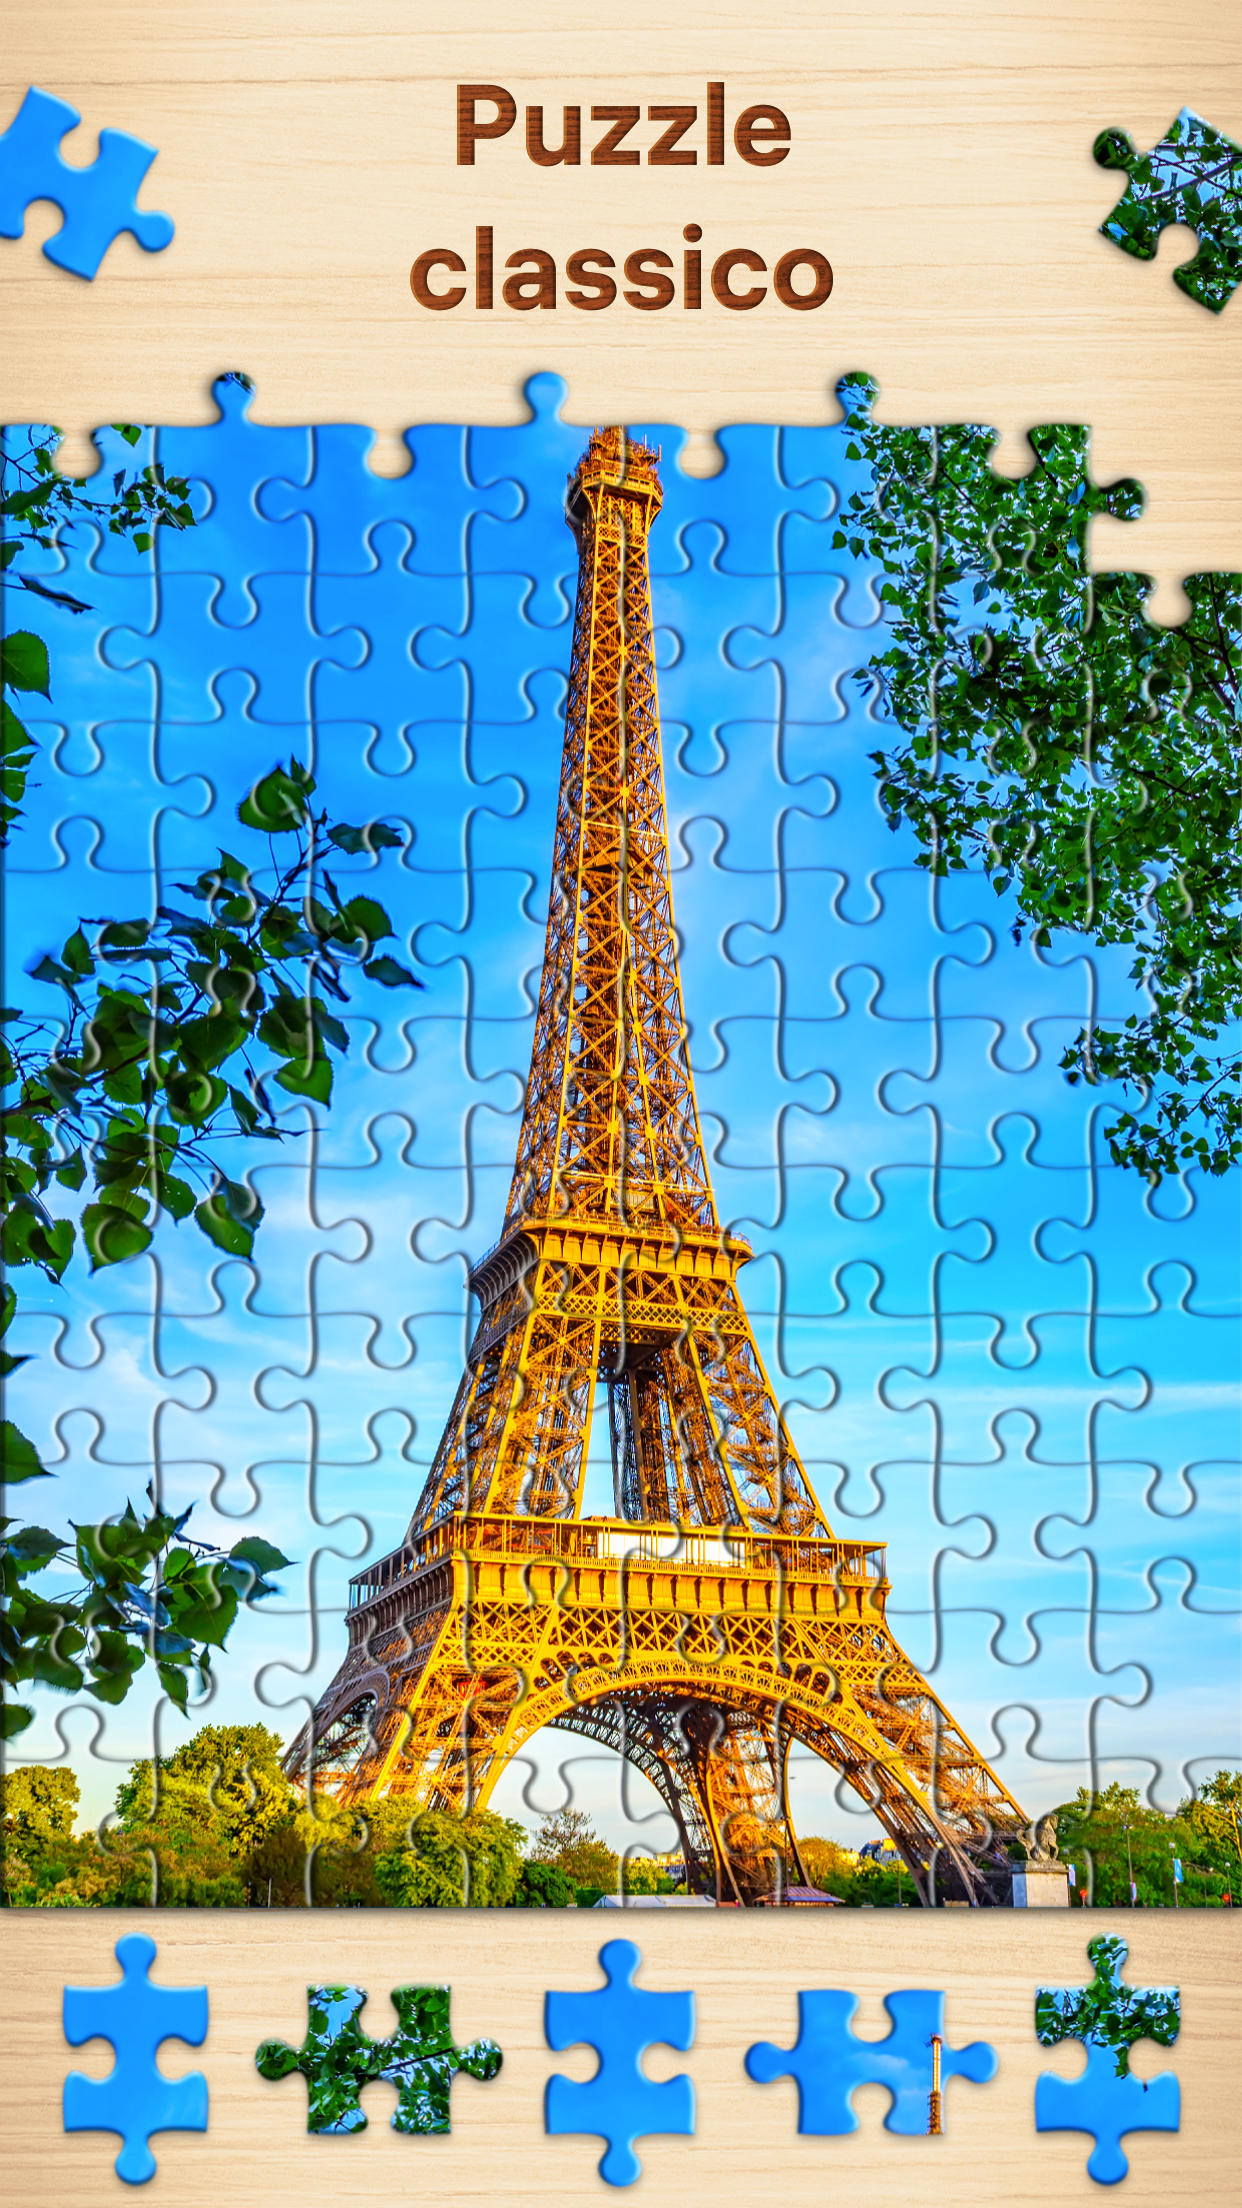 Screenshot 1 of Puzzle - Gioco di rompicapo 3.12.0